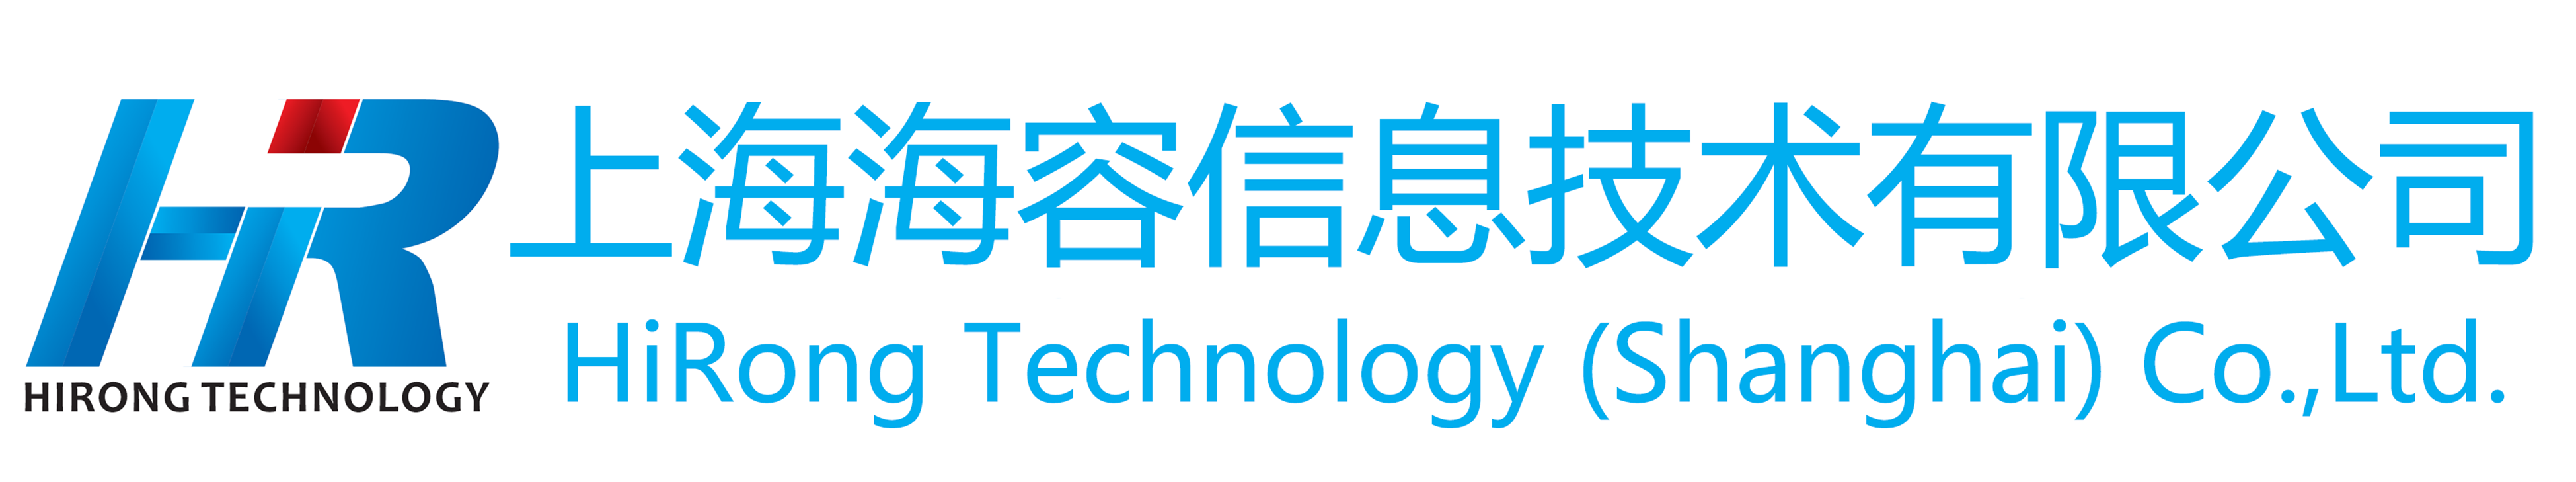 上海海容信息技术有限公司